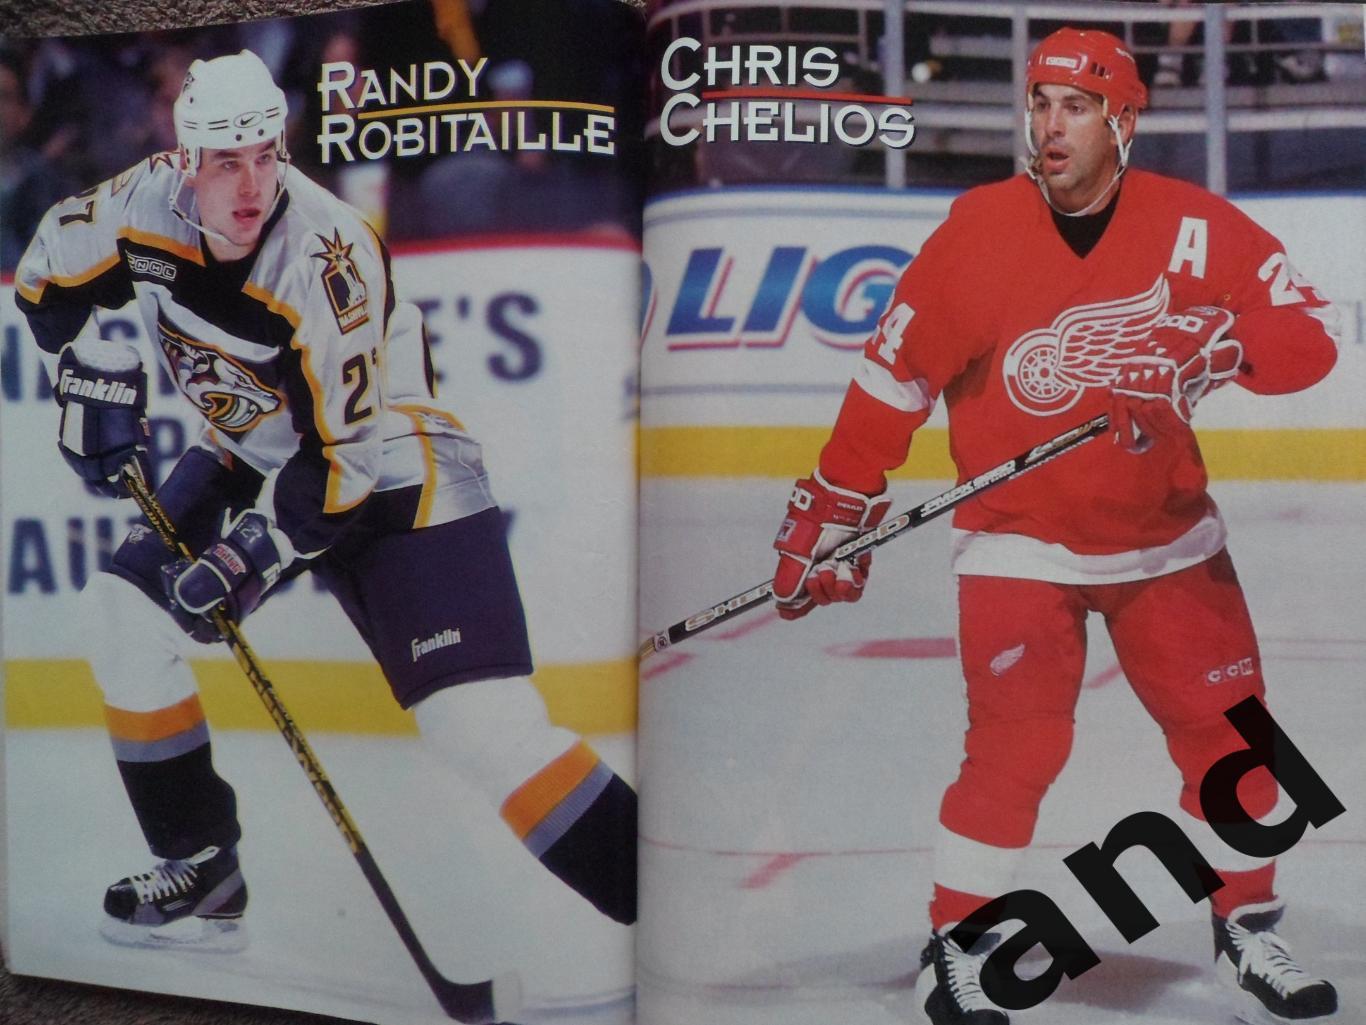 журнал хоккей Hockey Stars 2000 спецвыпуск: Плейофф (постеры) 3